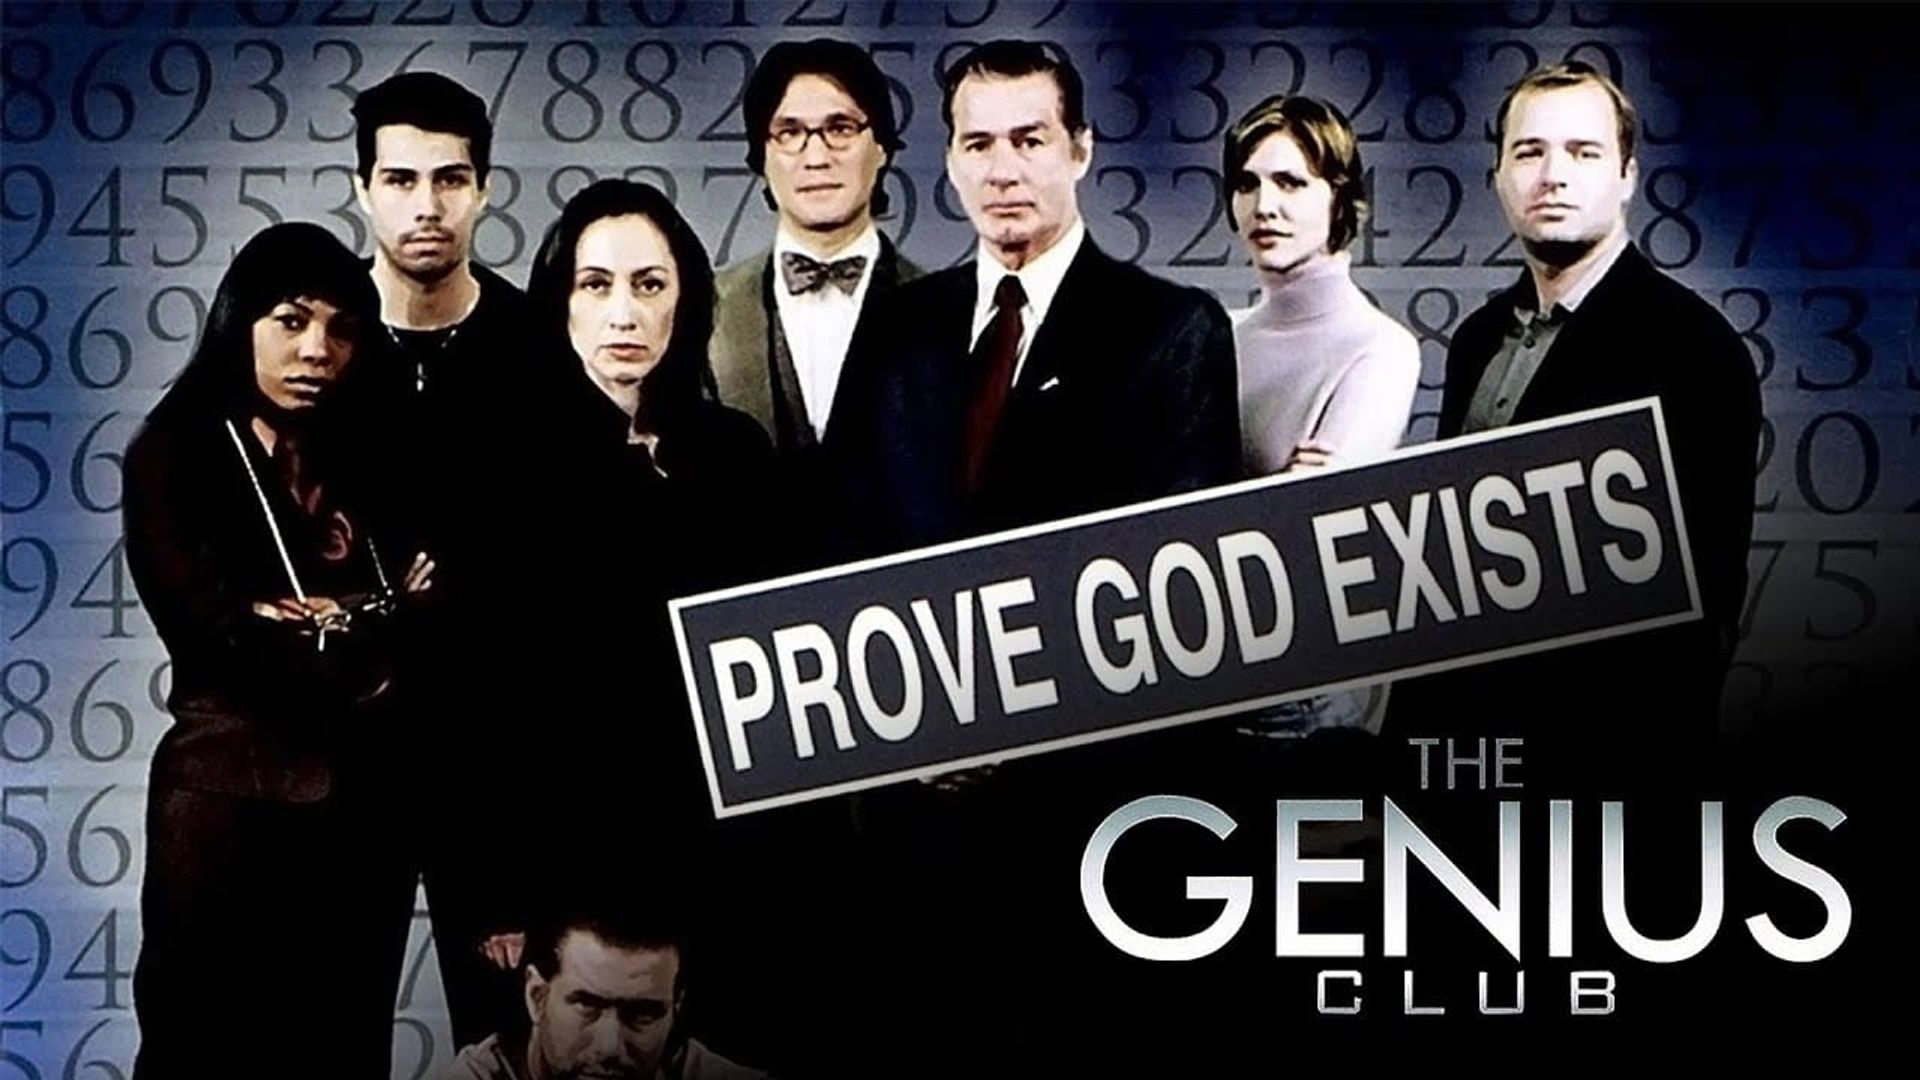 The Genius Club background